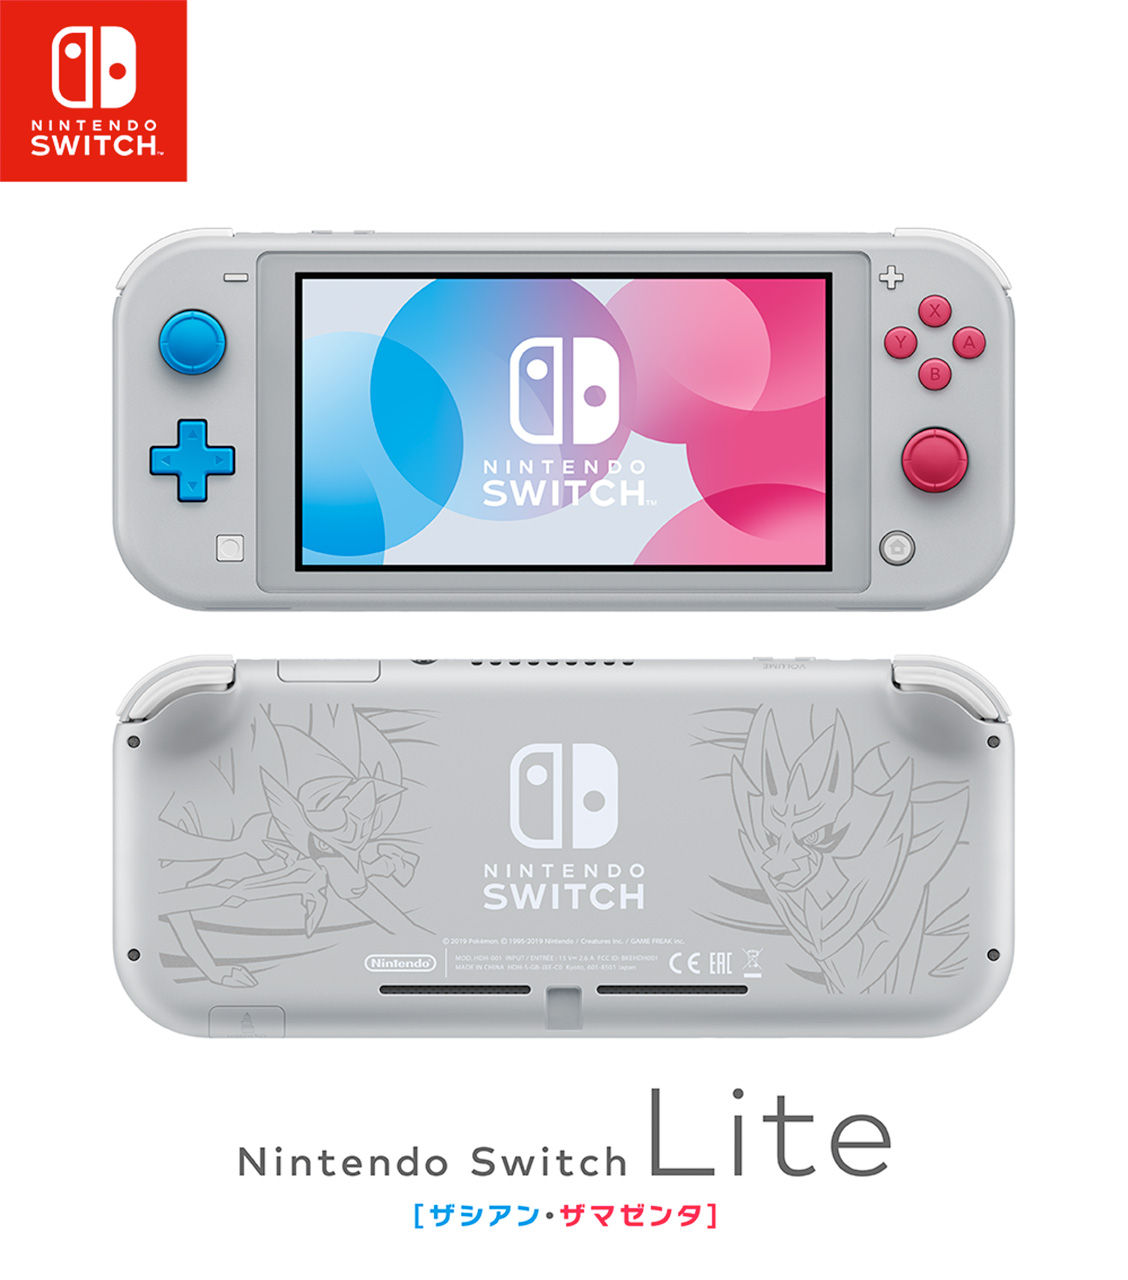 任天堂、携帯専用「Nintendo Switch Lite」発表。9月20日発売 :まとめニュースちゃんねるぷらす